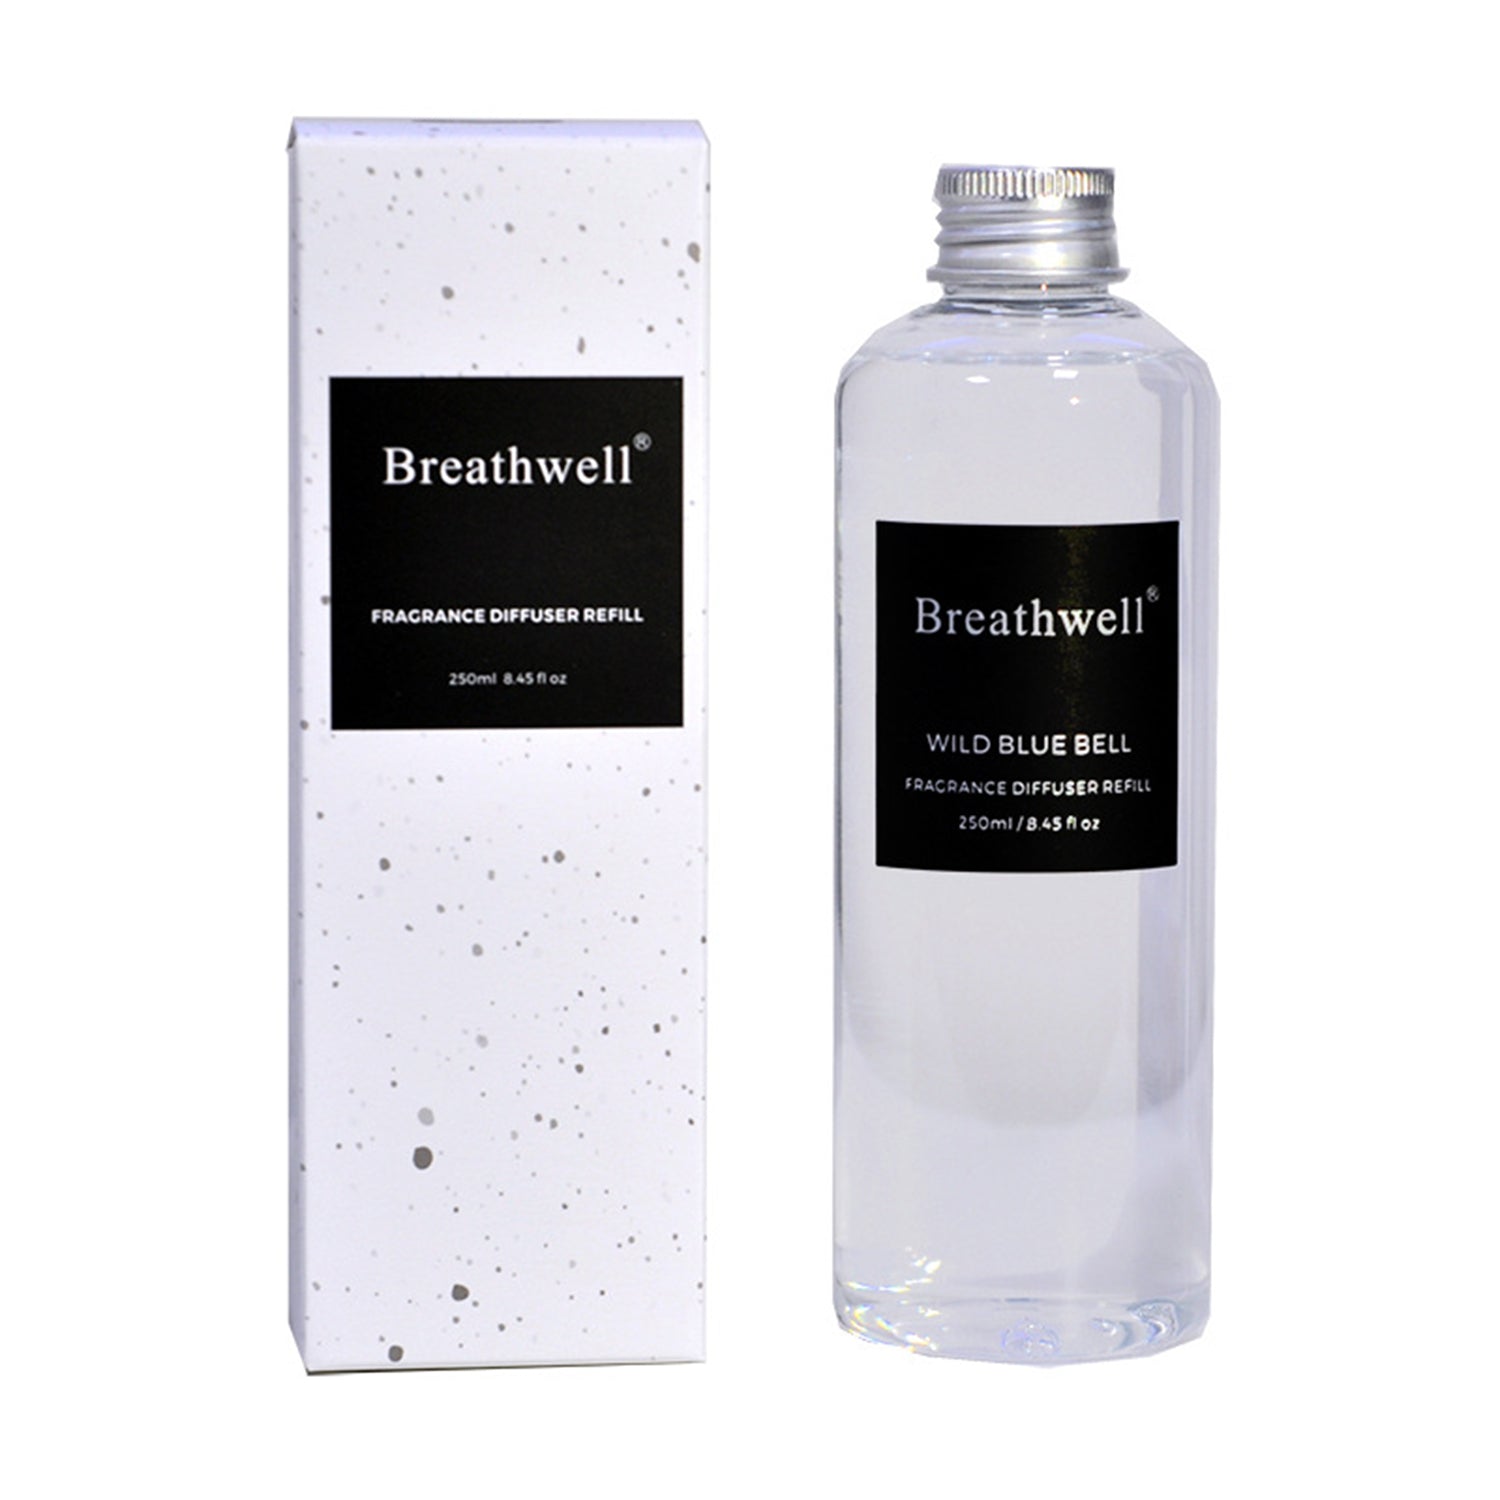 Breathwell Premium Essential Oil 250ML Aromatherapy Reed Diffuser Refill Reed Diffuser Refill Breathwell Black Opium 